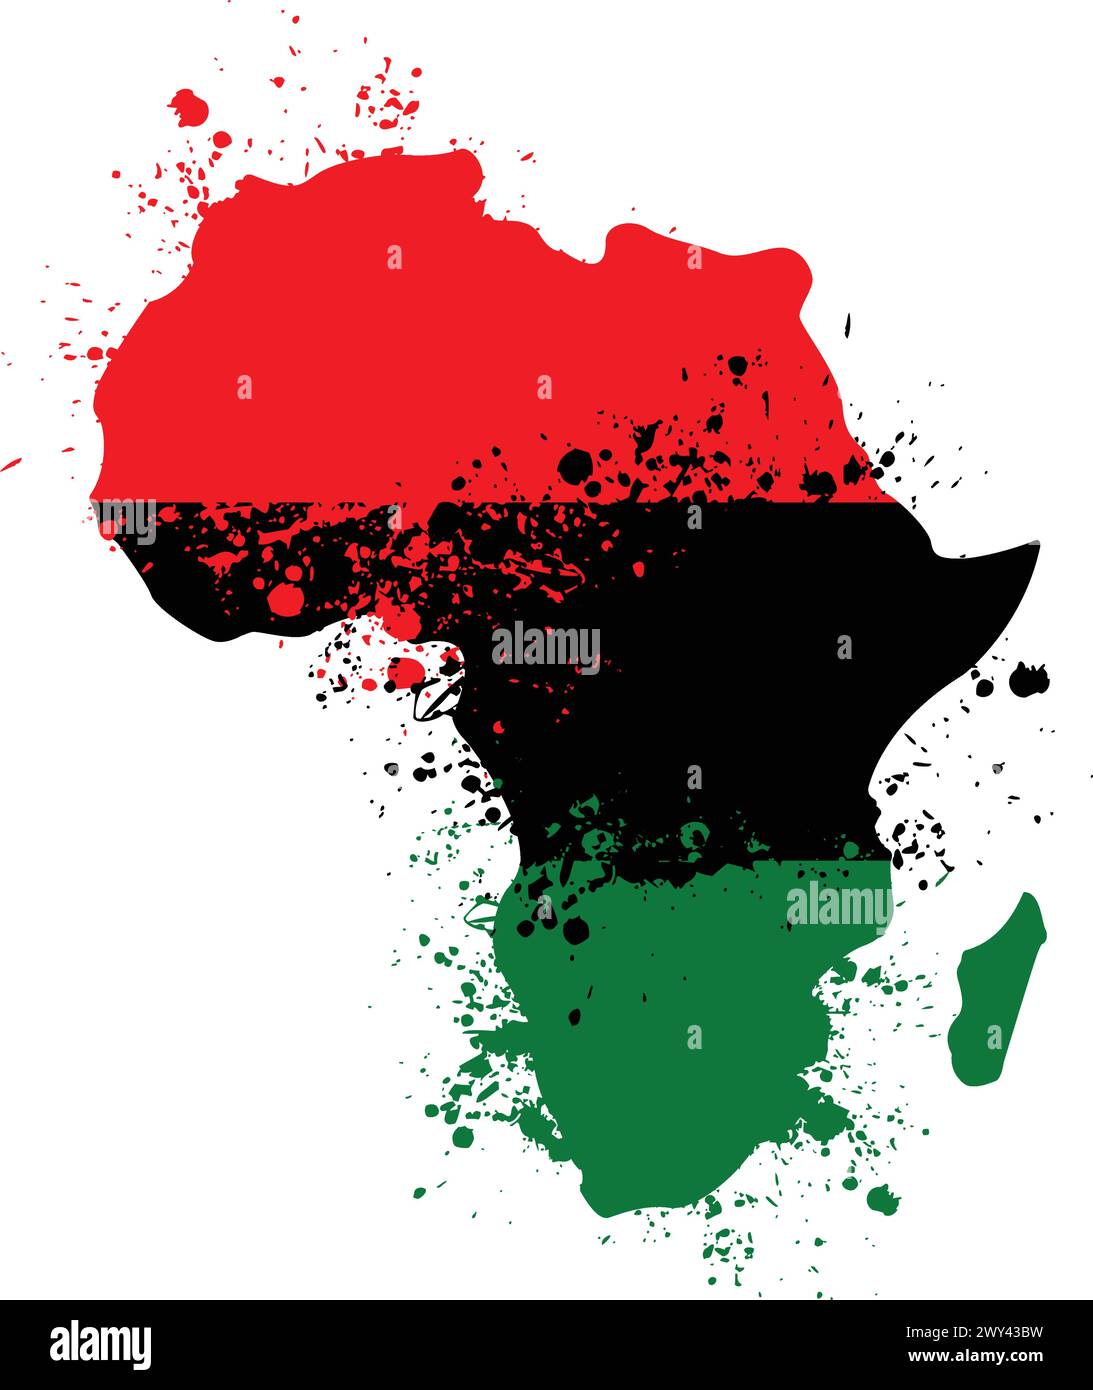 forme du continent africain simplifiée avec le vecteur de peinture éclaboussée grunge de drapeau panafricain isolé sur fond blanc Illustration de Vecteur